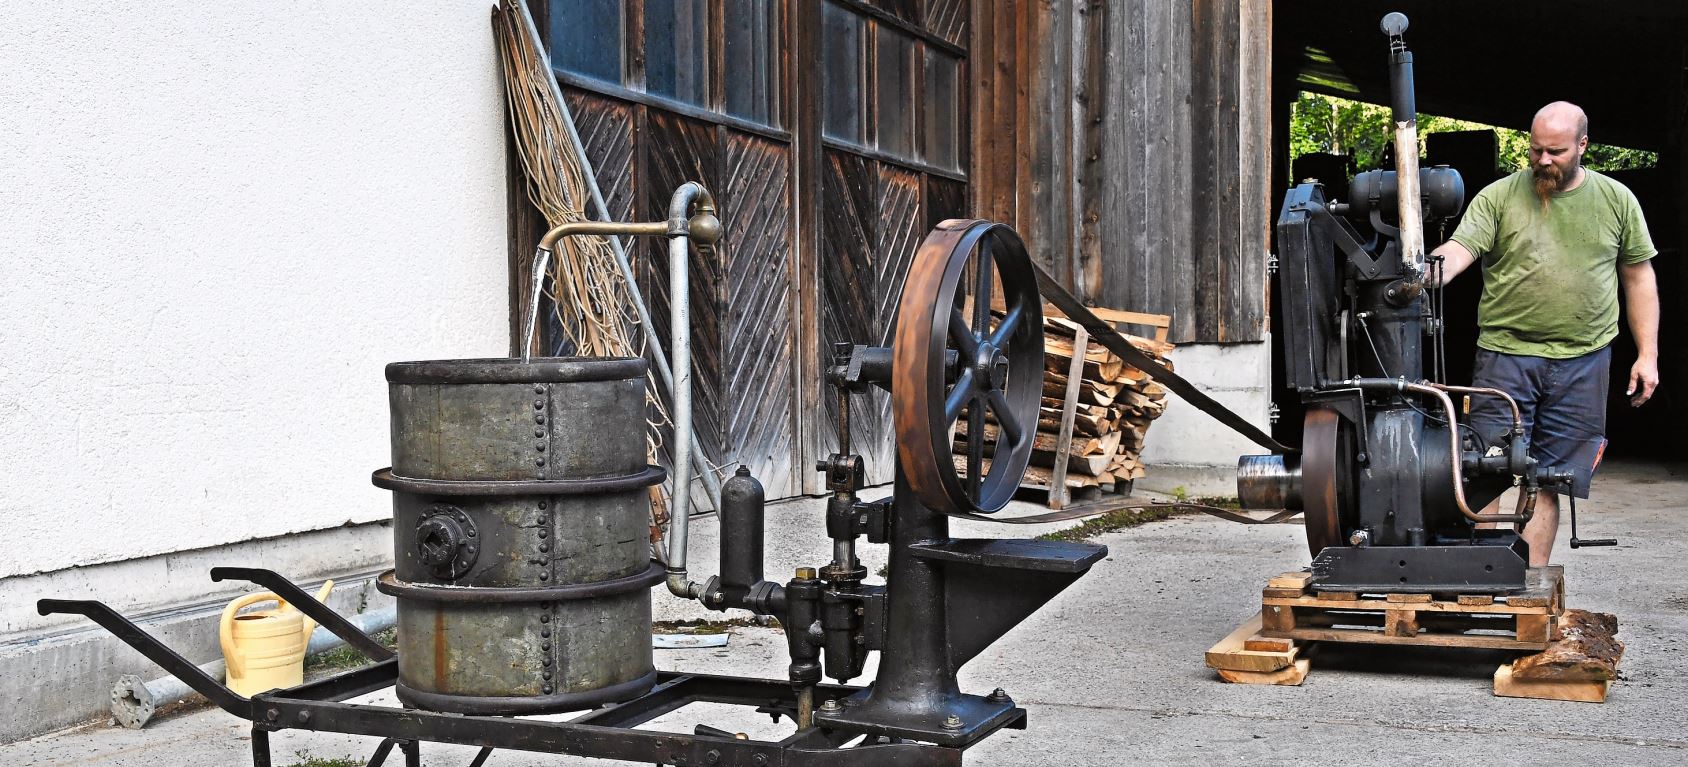 Christian Maag bringt eine Wasserpumpe mit einem Benzinmotorantrieb, der aus dem Jahre 1920 stammt, zum Laufen.